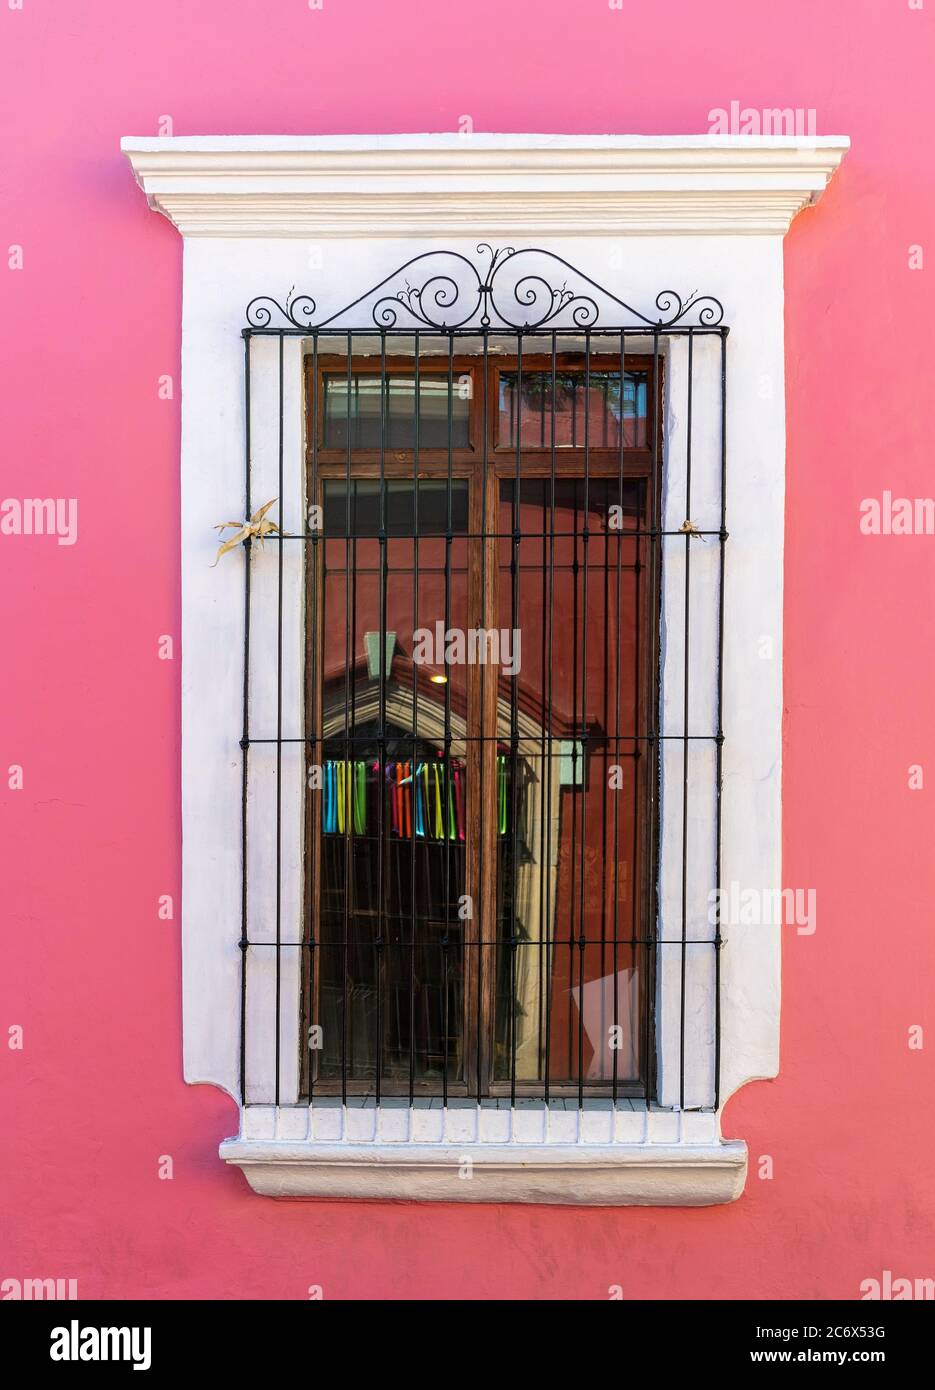 Architecture de style colonial avec un mur rose et une décoration en fer forgé sur une fenêtre en bois, Oaxaca, Mexique. Banque D'Images